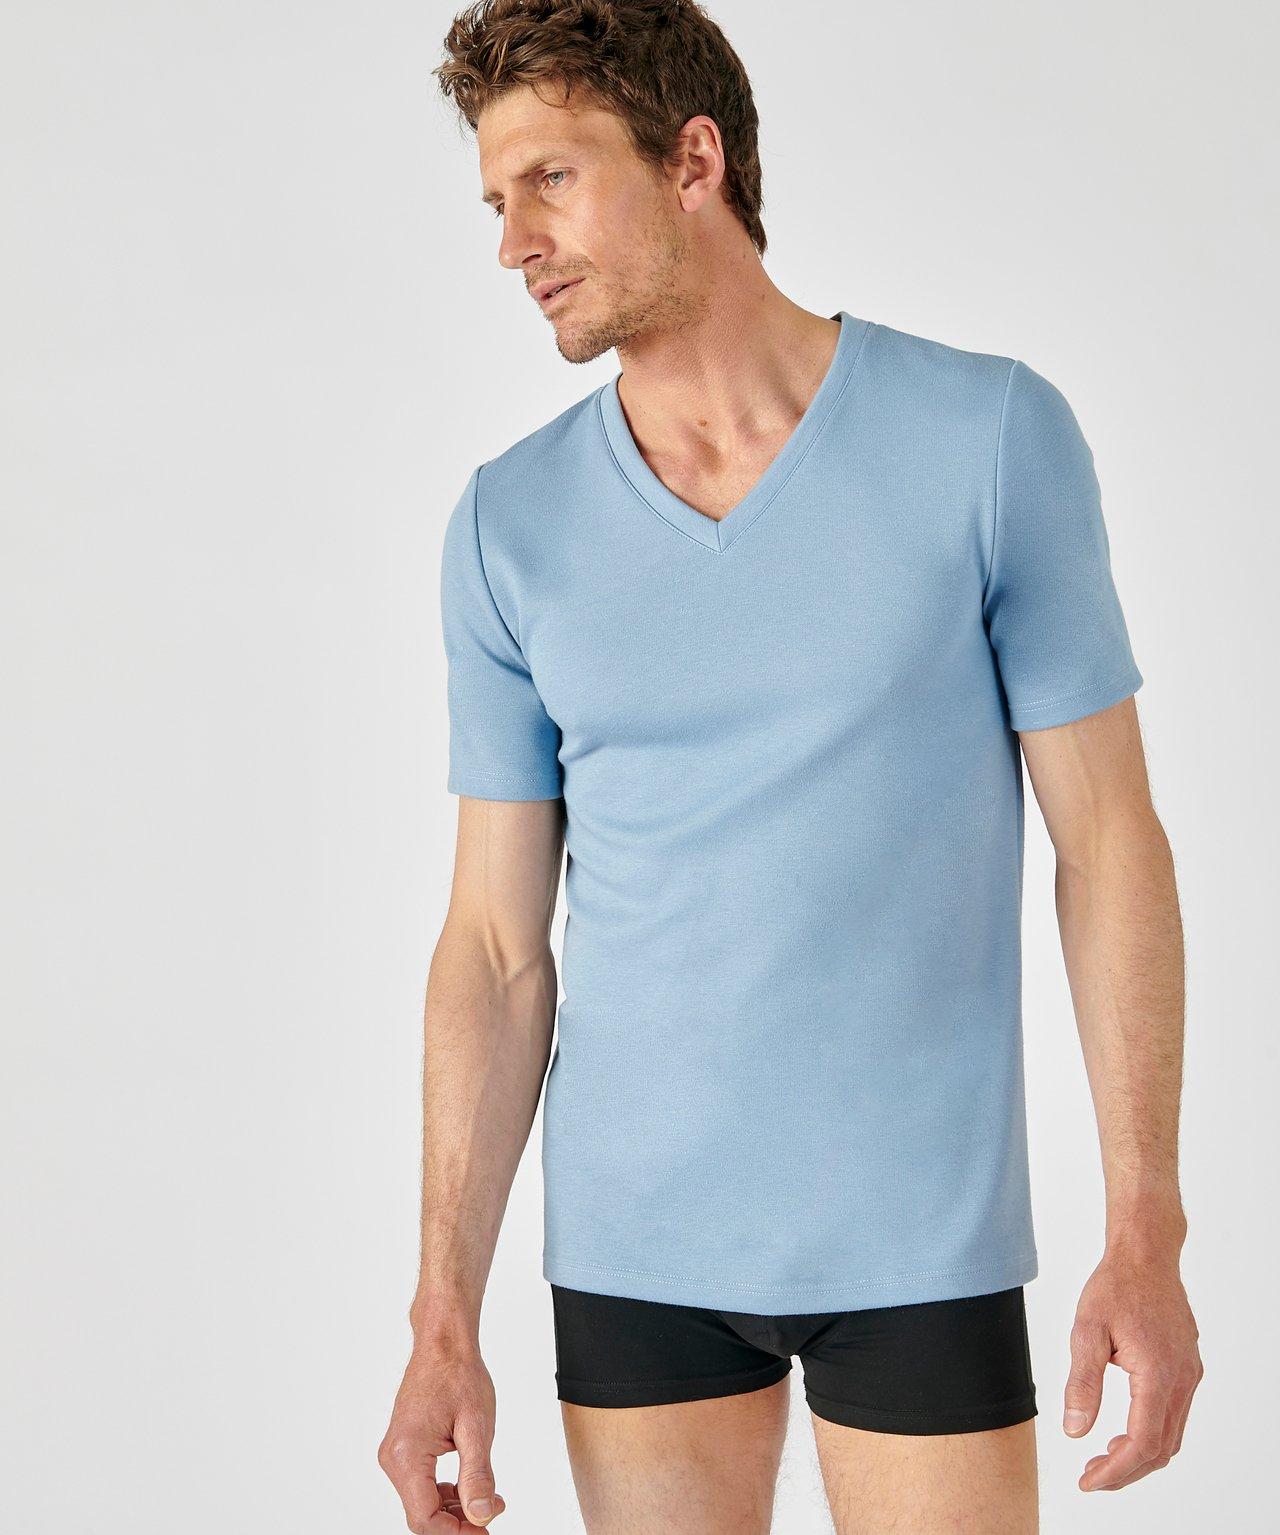 T-shirt Mit V-ausschnitt, Wärmegrad Medium 3. Herren Blau S von Damart